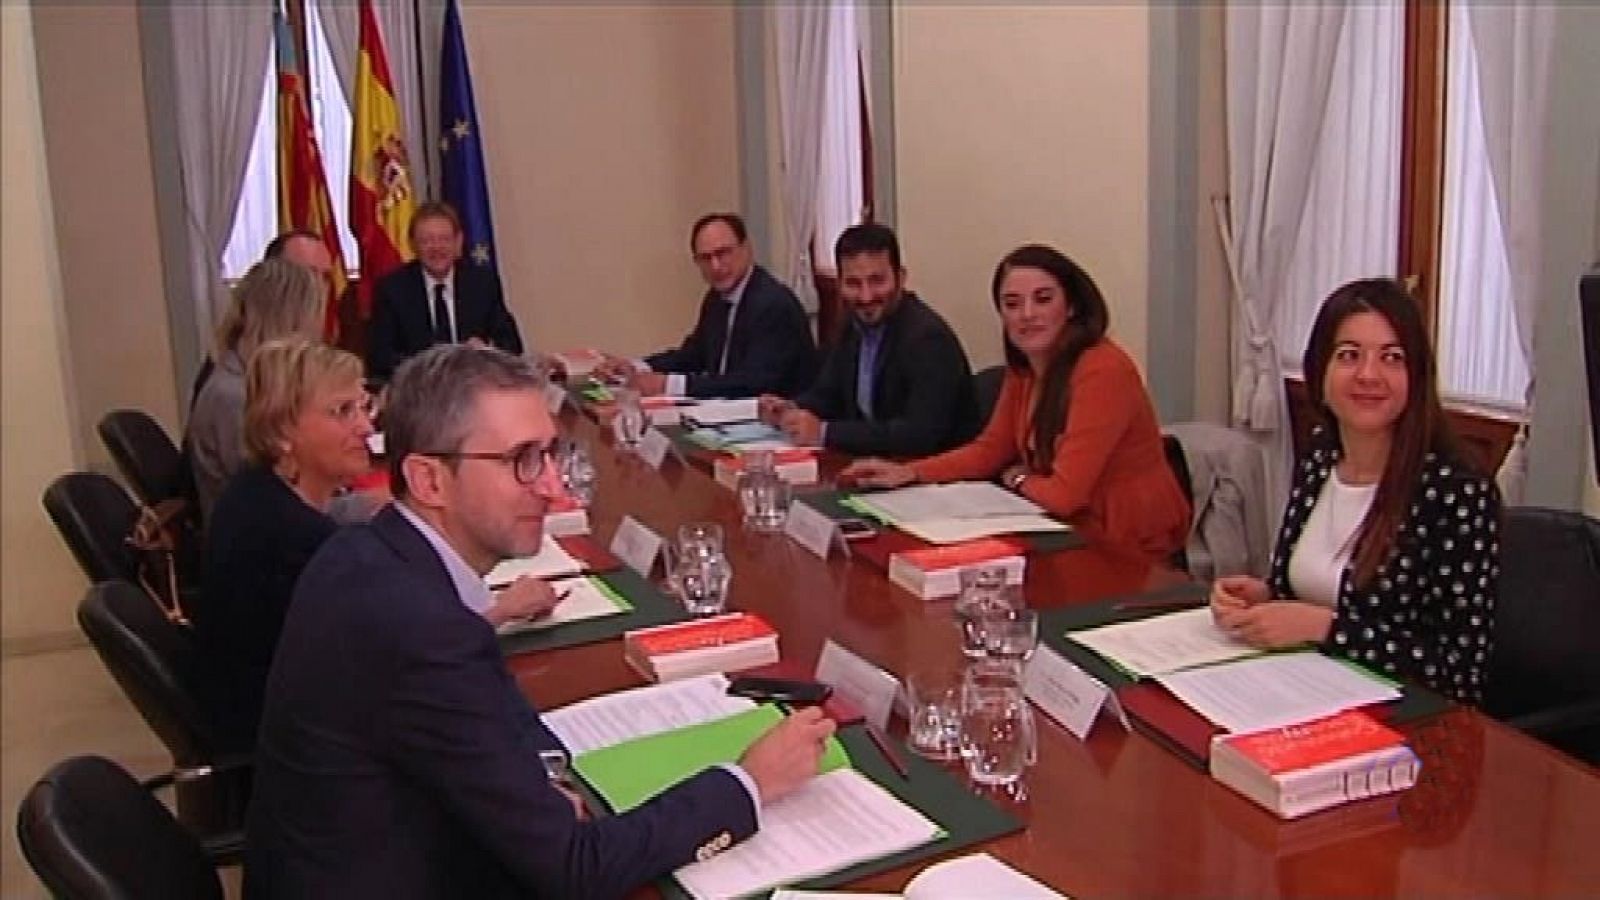 L'Informatiu - Comunitat Valenciana 2 - 18/10/19 - RTVE.es